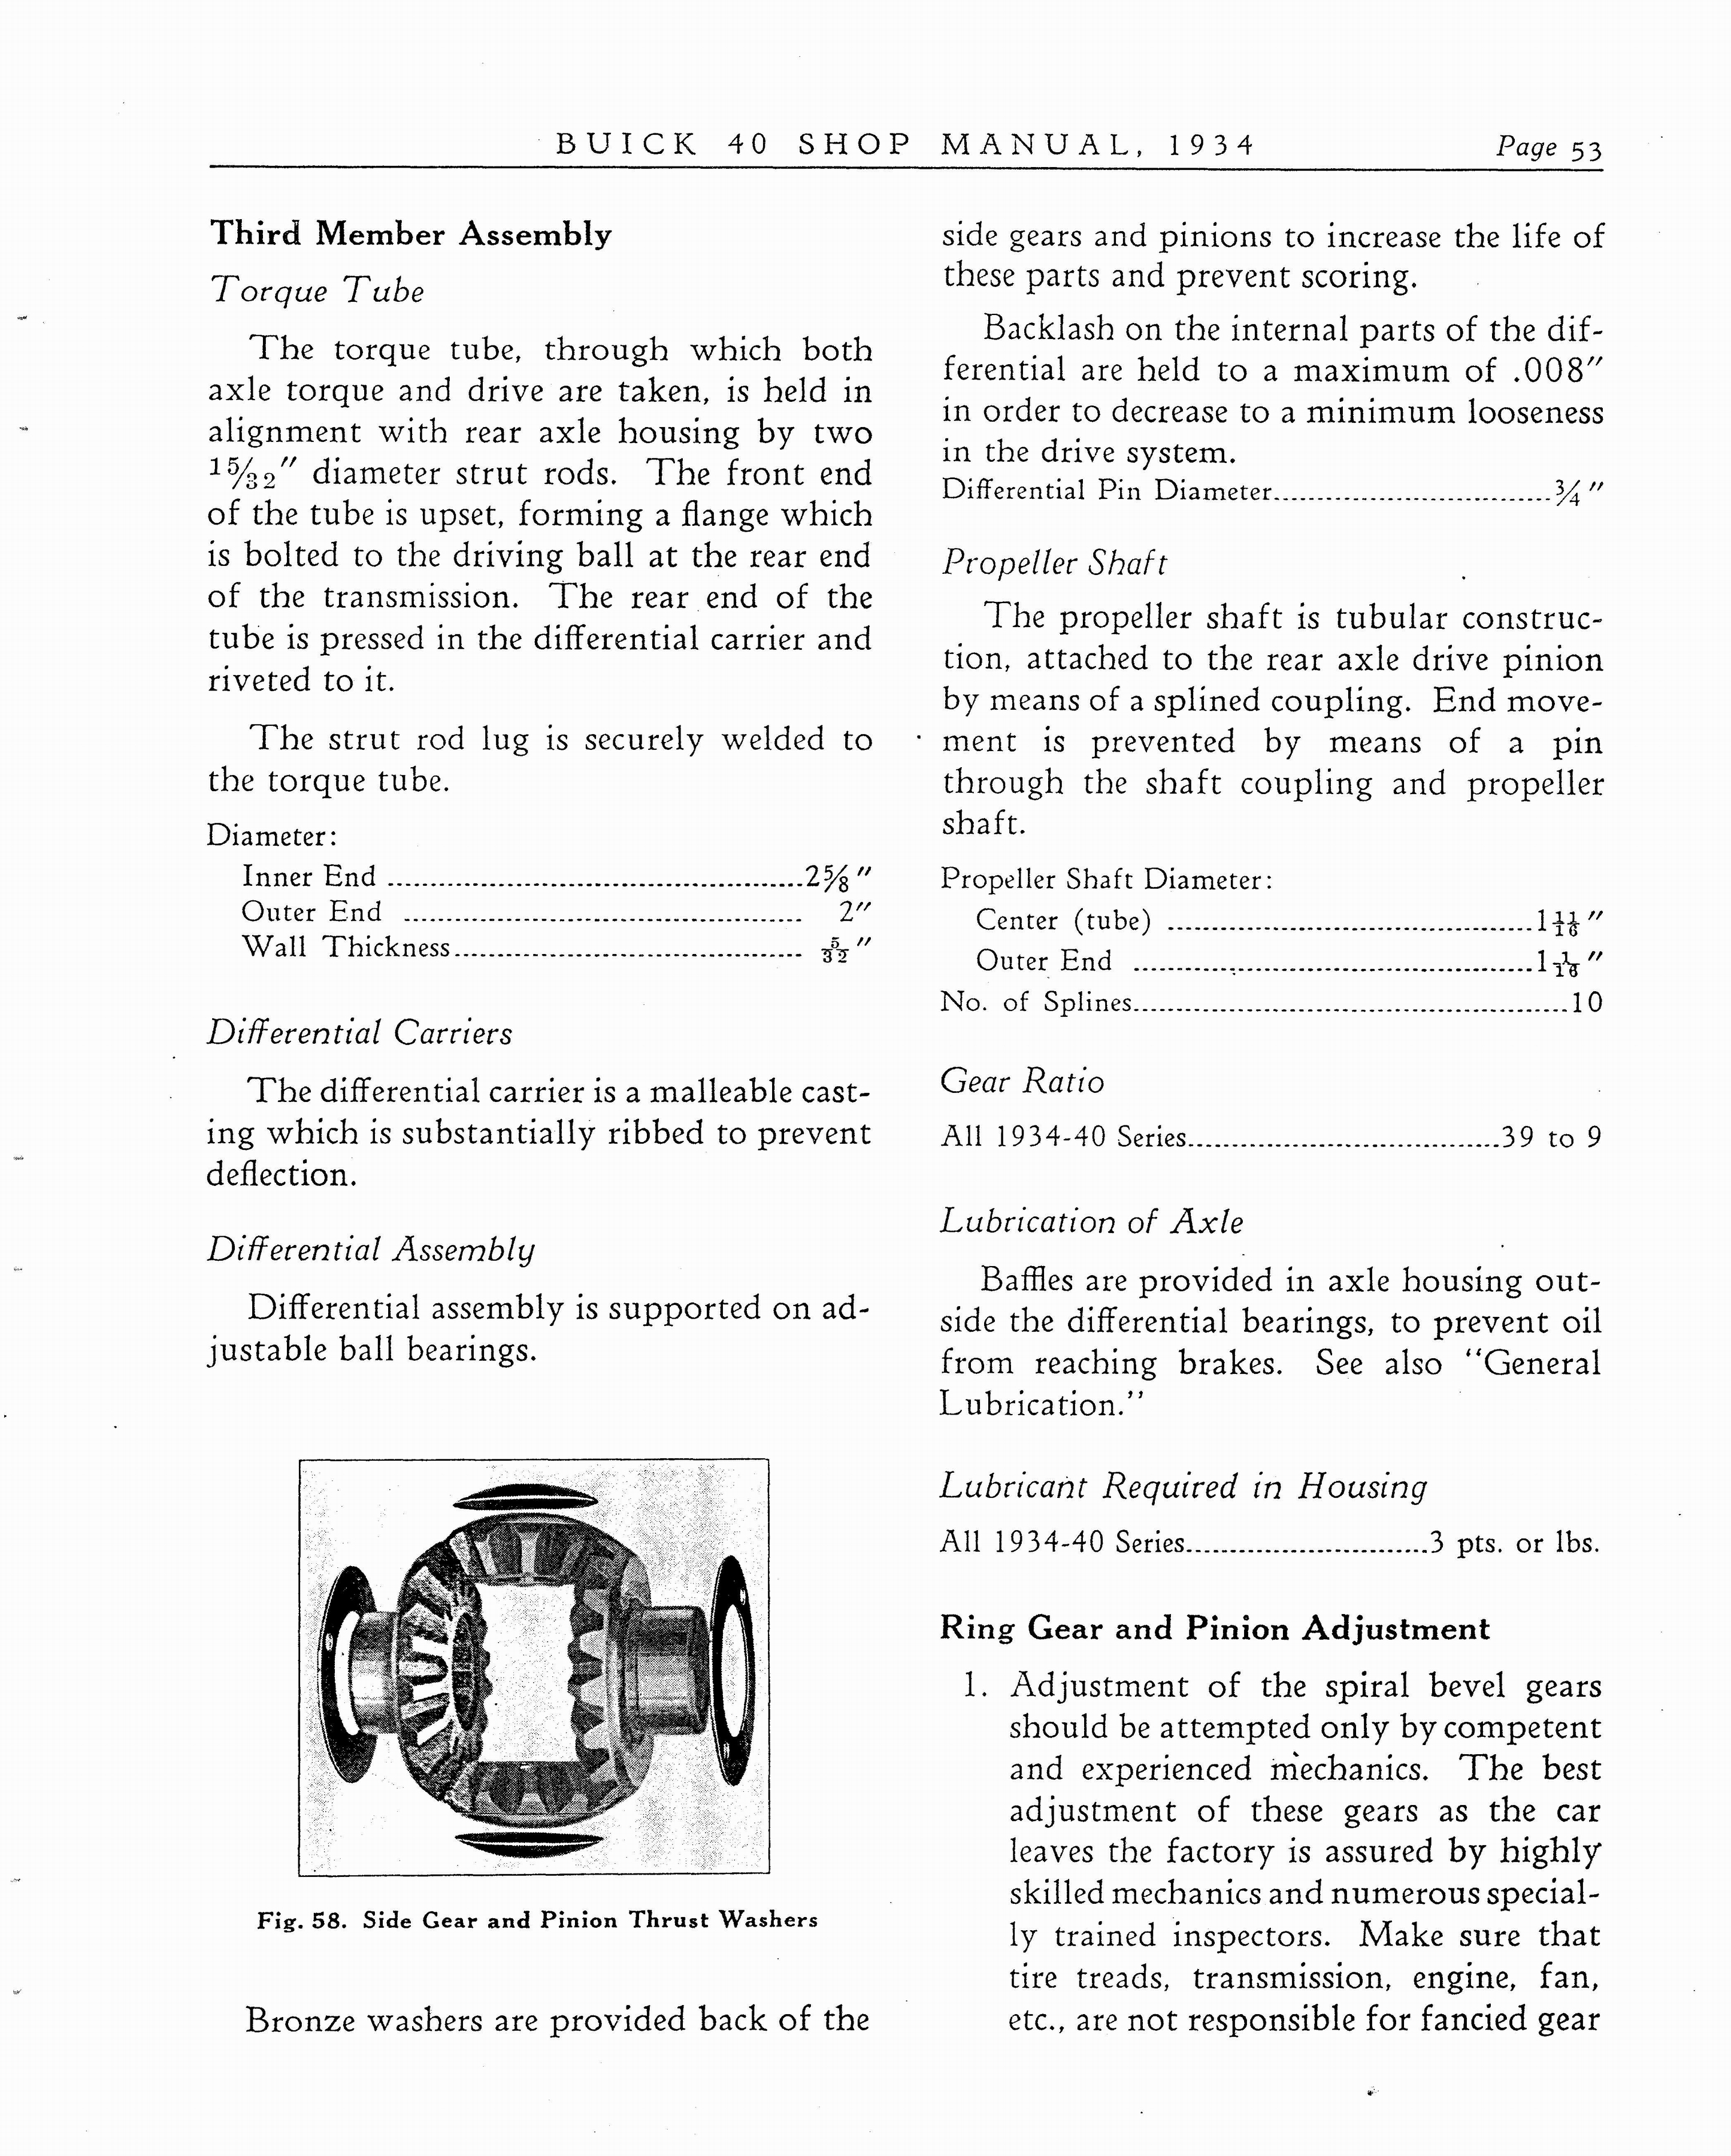 n_1934 Buick Series 40 Shop Manual_Page_054.jpg